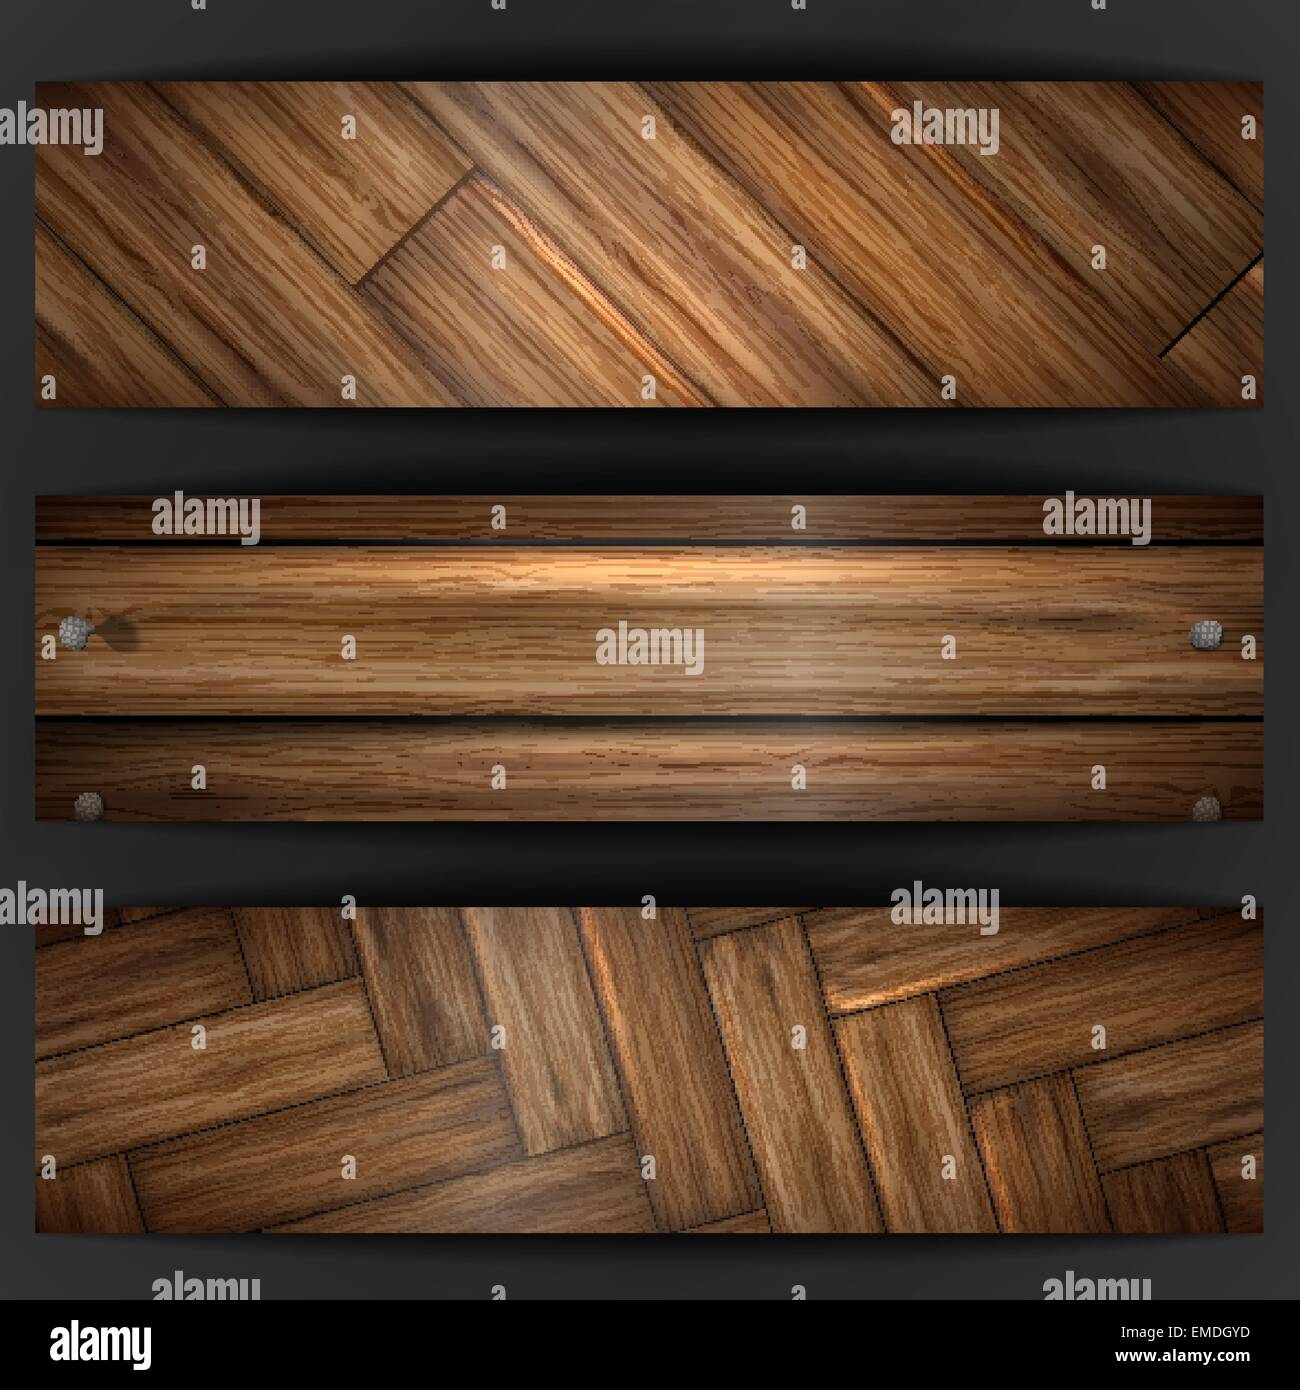 Wooden texture banner. Stock Vector